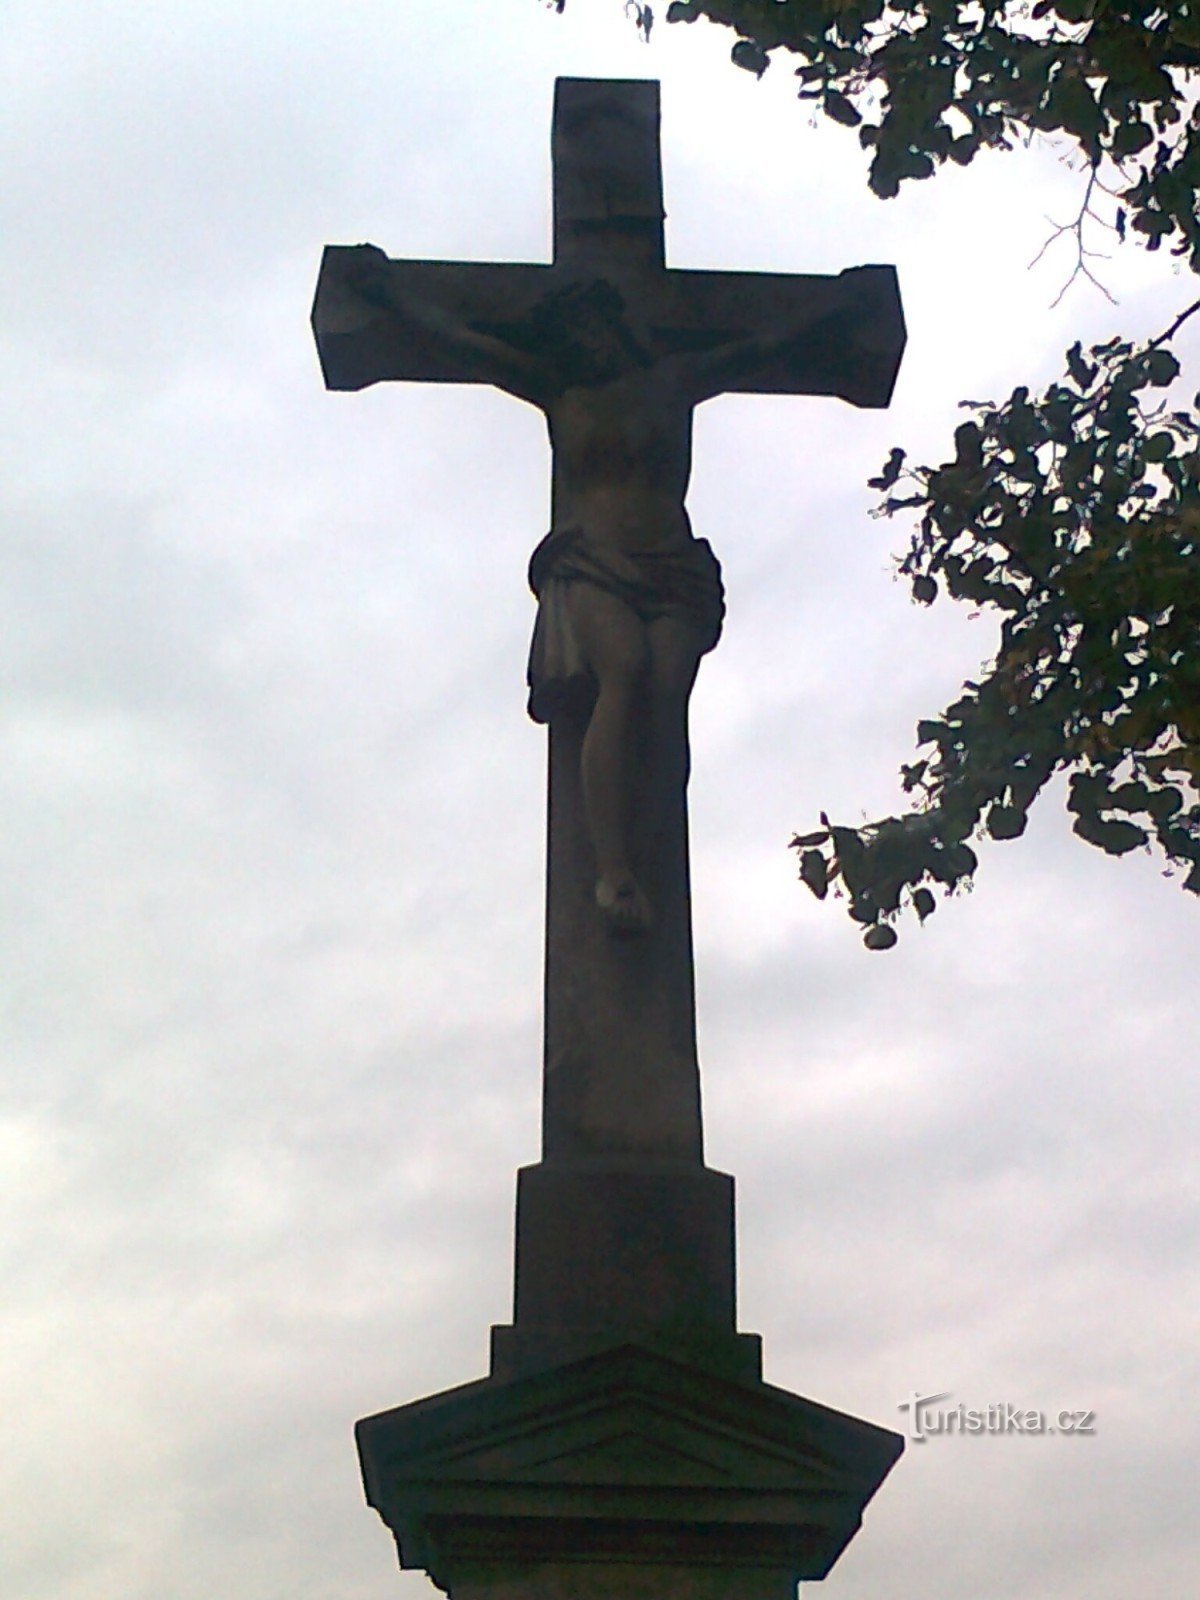 Úsov - stone cross by the Úsov - Stavenice road